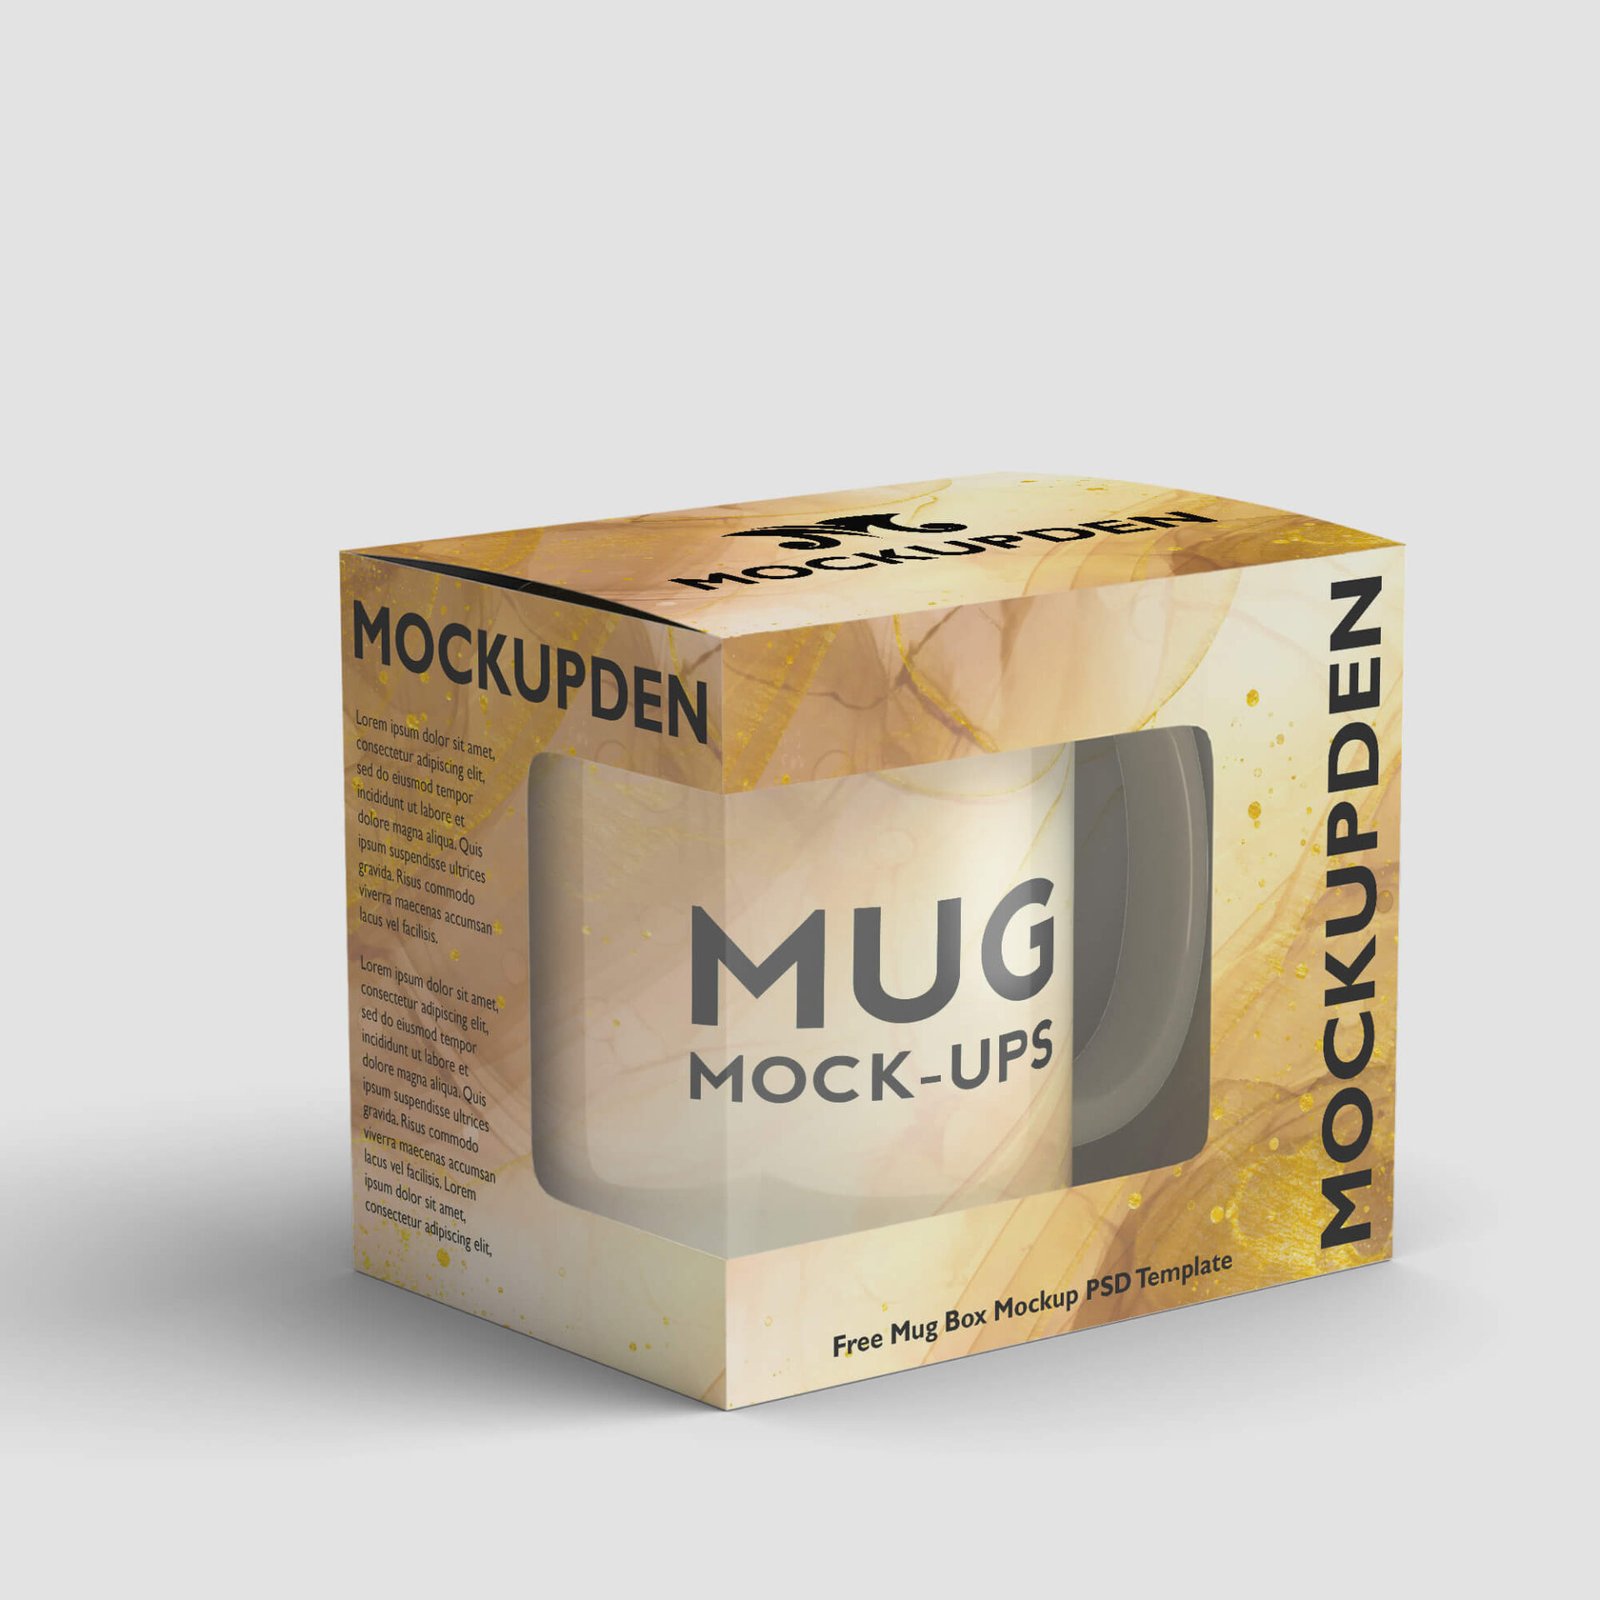 Download Free Mug Box Mockup PSD Template - Mockup Den